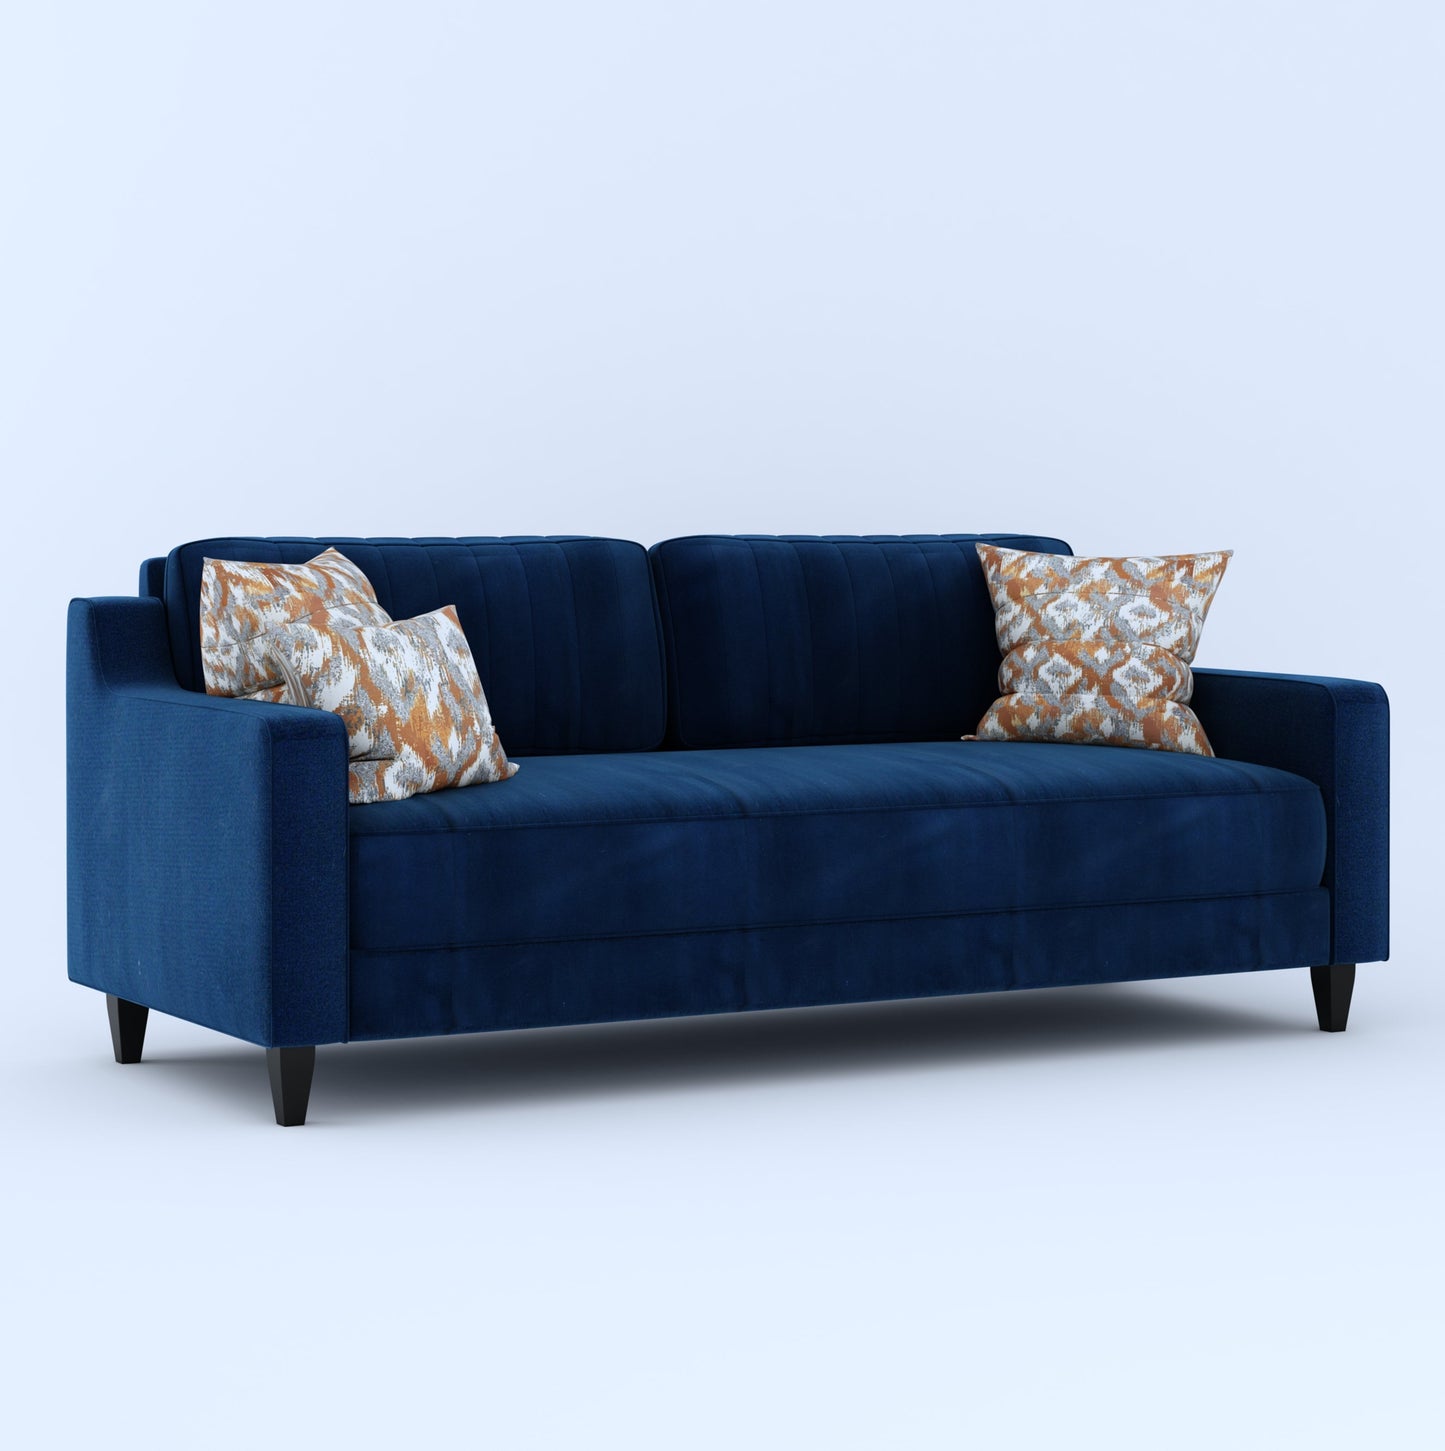 Zerry 3 Seater Sofa